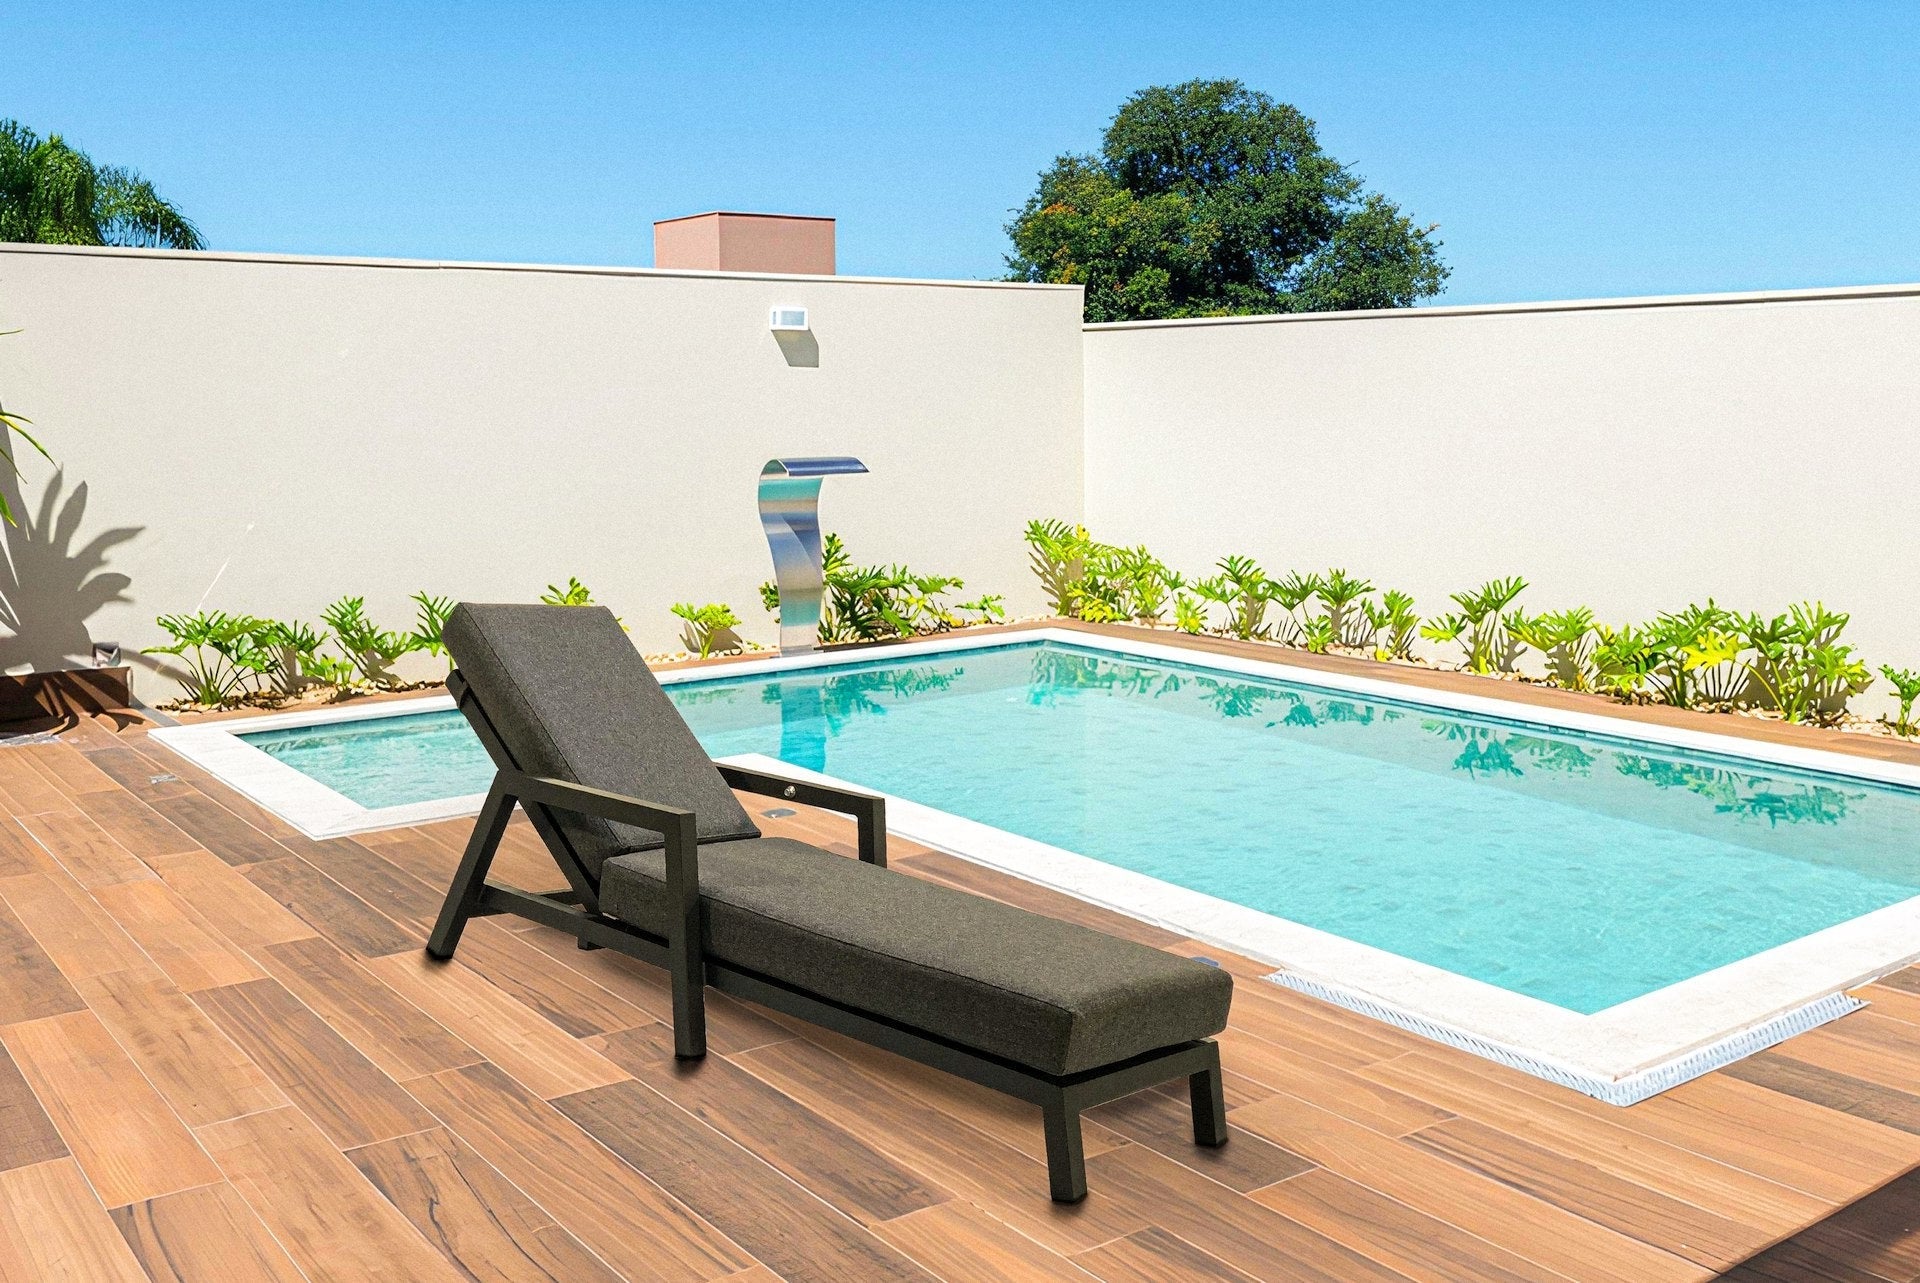 Moderne Sonnenliege Bibi mit anthrazitfarbenem Aluminiumgestell und dunkelgrauer Kissenauflage, verstellbar für ultimativen Komfort an einem sonnigen Poolbereich.